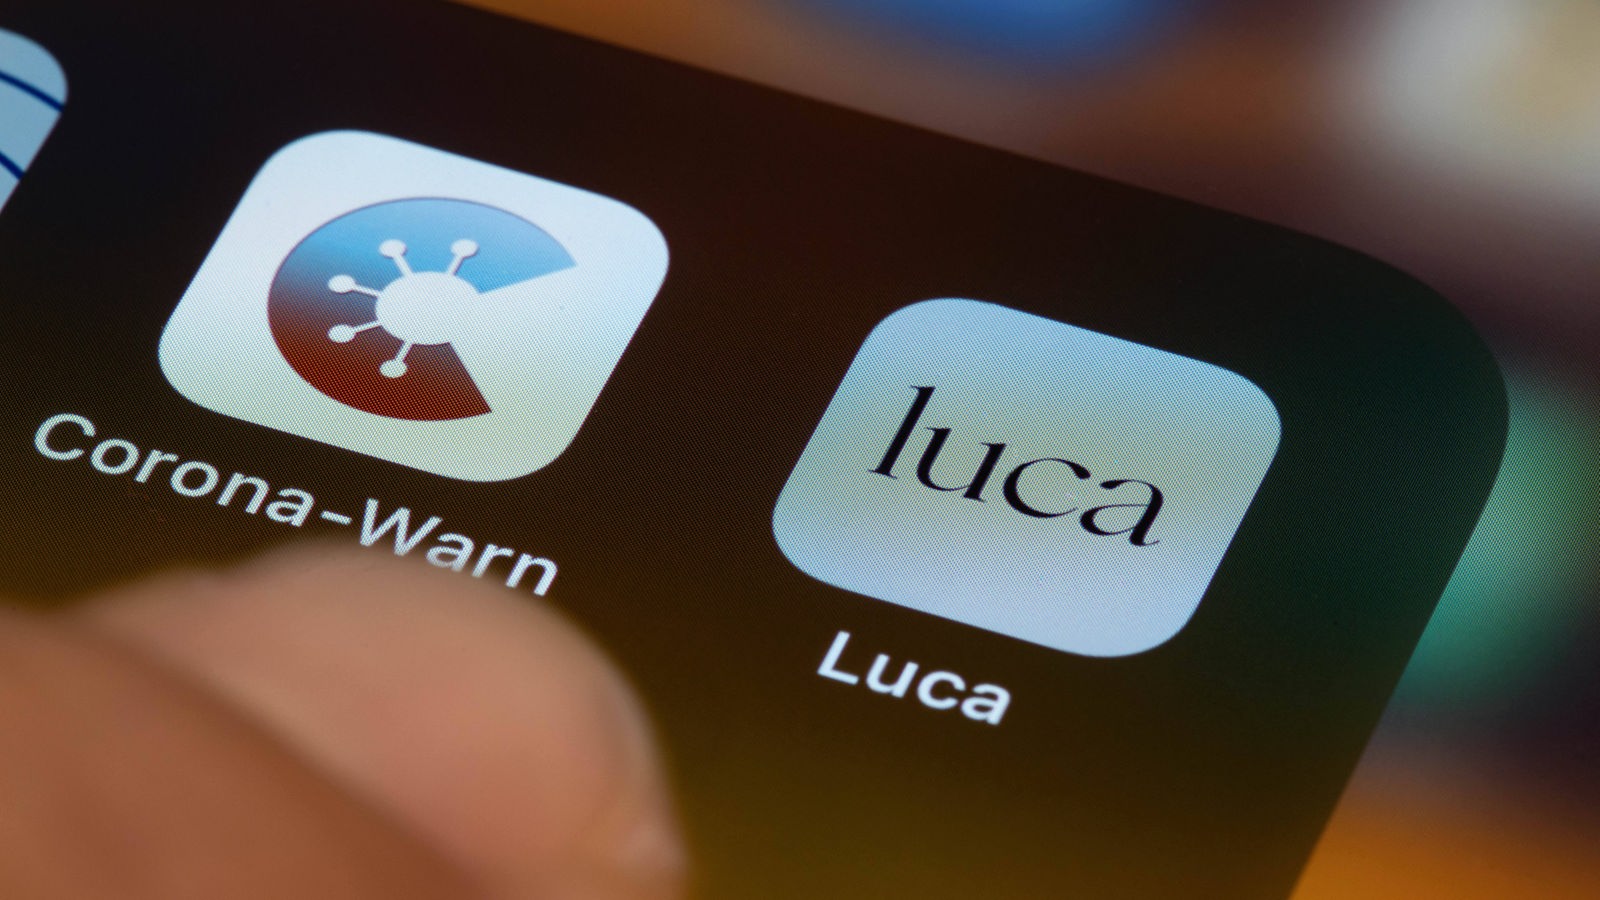 Corona Warn App Luca App Und Digitaler Impfpass Auf Dem Prufstand Podcasts Cosmo Radio Wdr